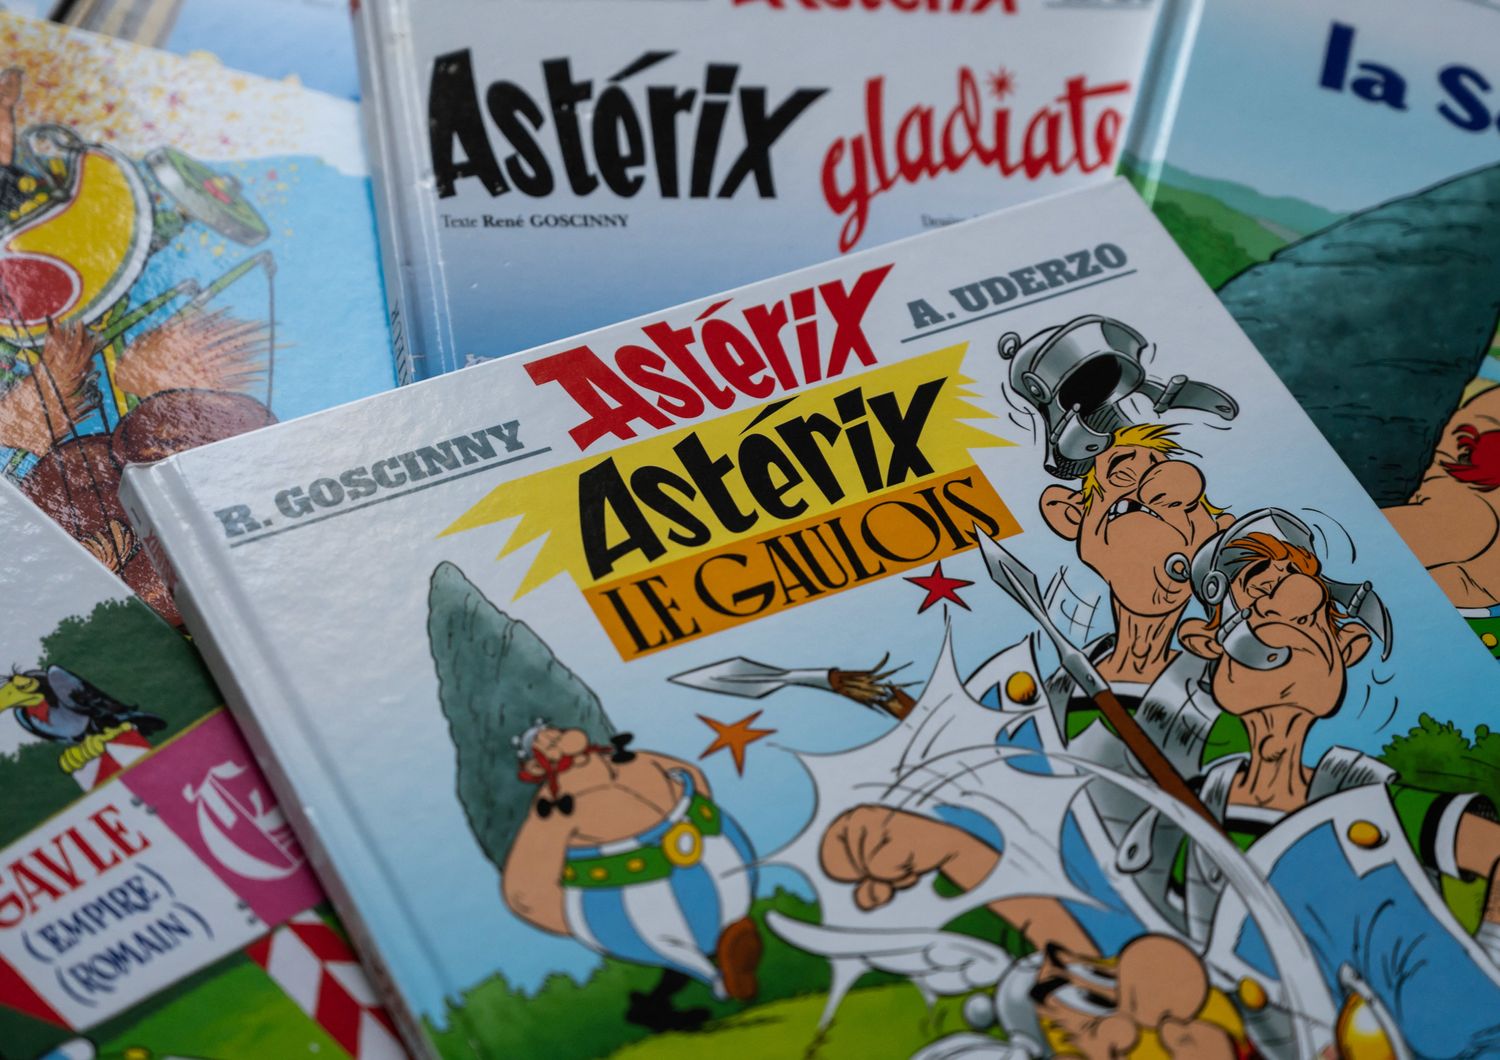 Copertina di Asterix